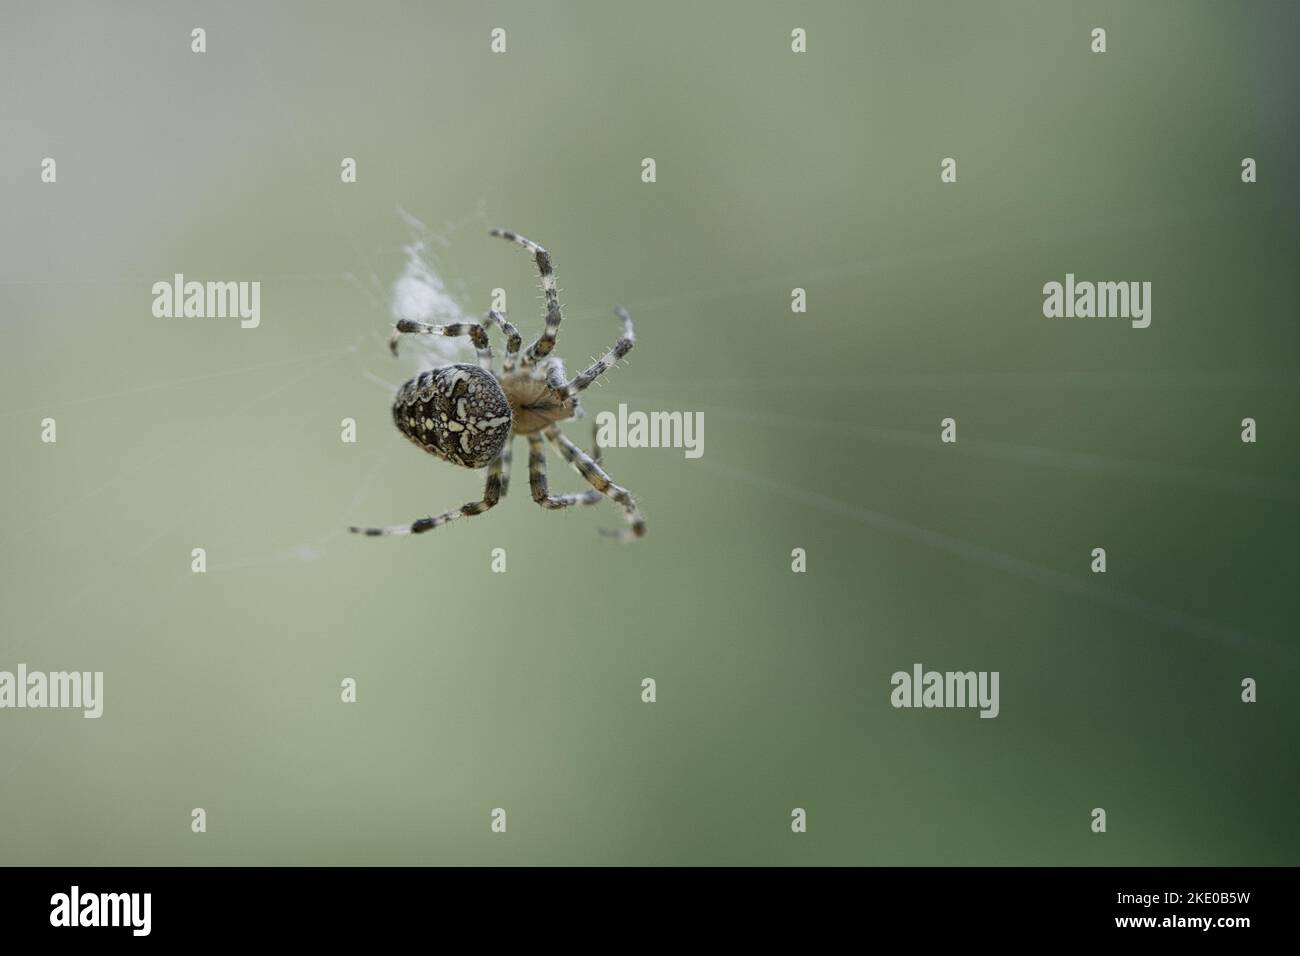 Croce ragno in una ragnatela di ragno, in agguato per preda. Sfondo sfocato. Un cacciatore utile tra insetti. Arachnid. Foto di animali selvatici. Foto Stock